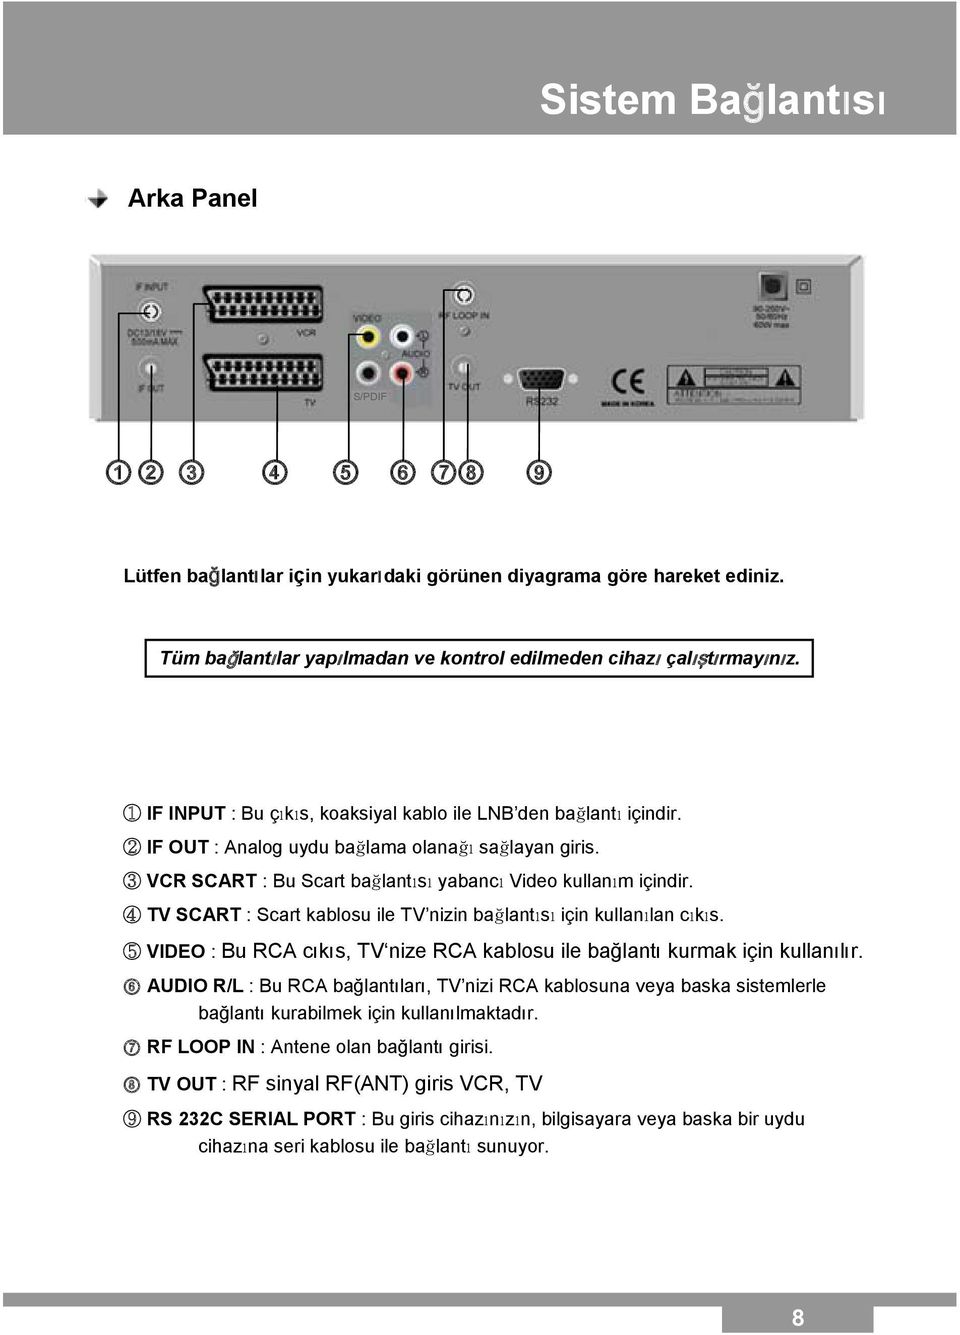 4 TV SCART : Scart kablosu ile TV nizin bağlantısı için kullanılan cıkıs. 5 VIDEO : Bu RCA cıkıs, TV nize RCA kablosu ile bağlantı kurmak için kullanılır.